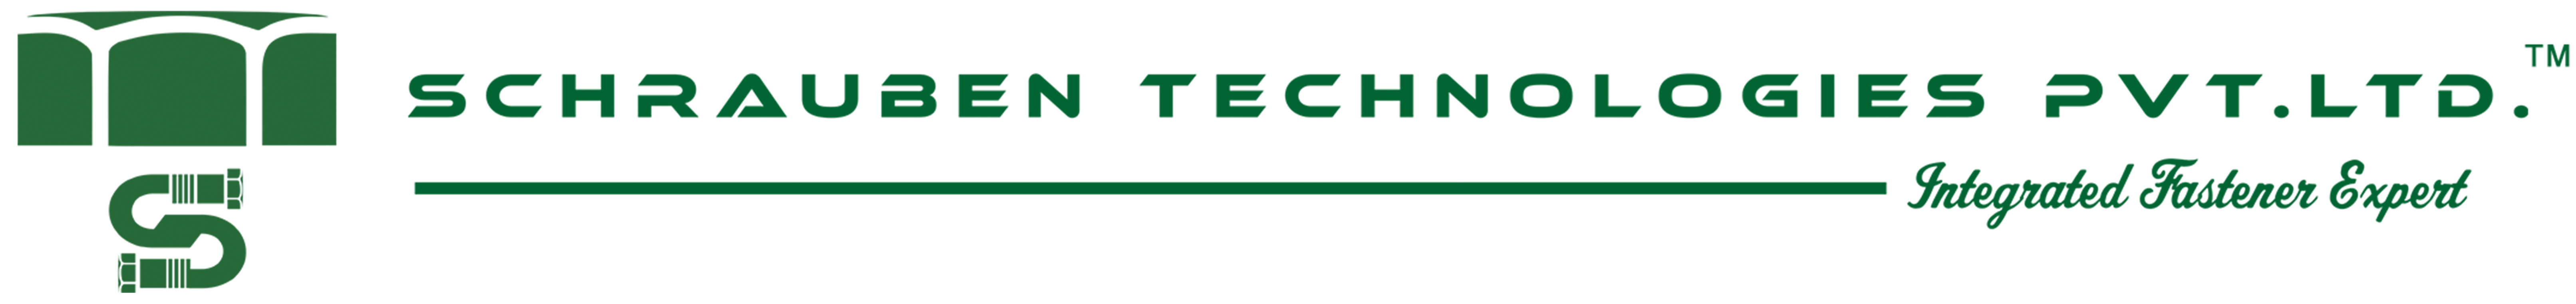 Schrauben Technologies Pvt. Ltd.